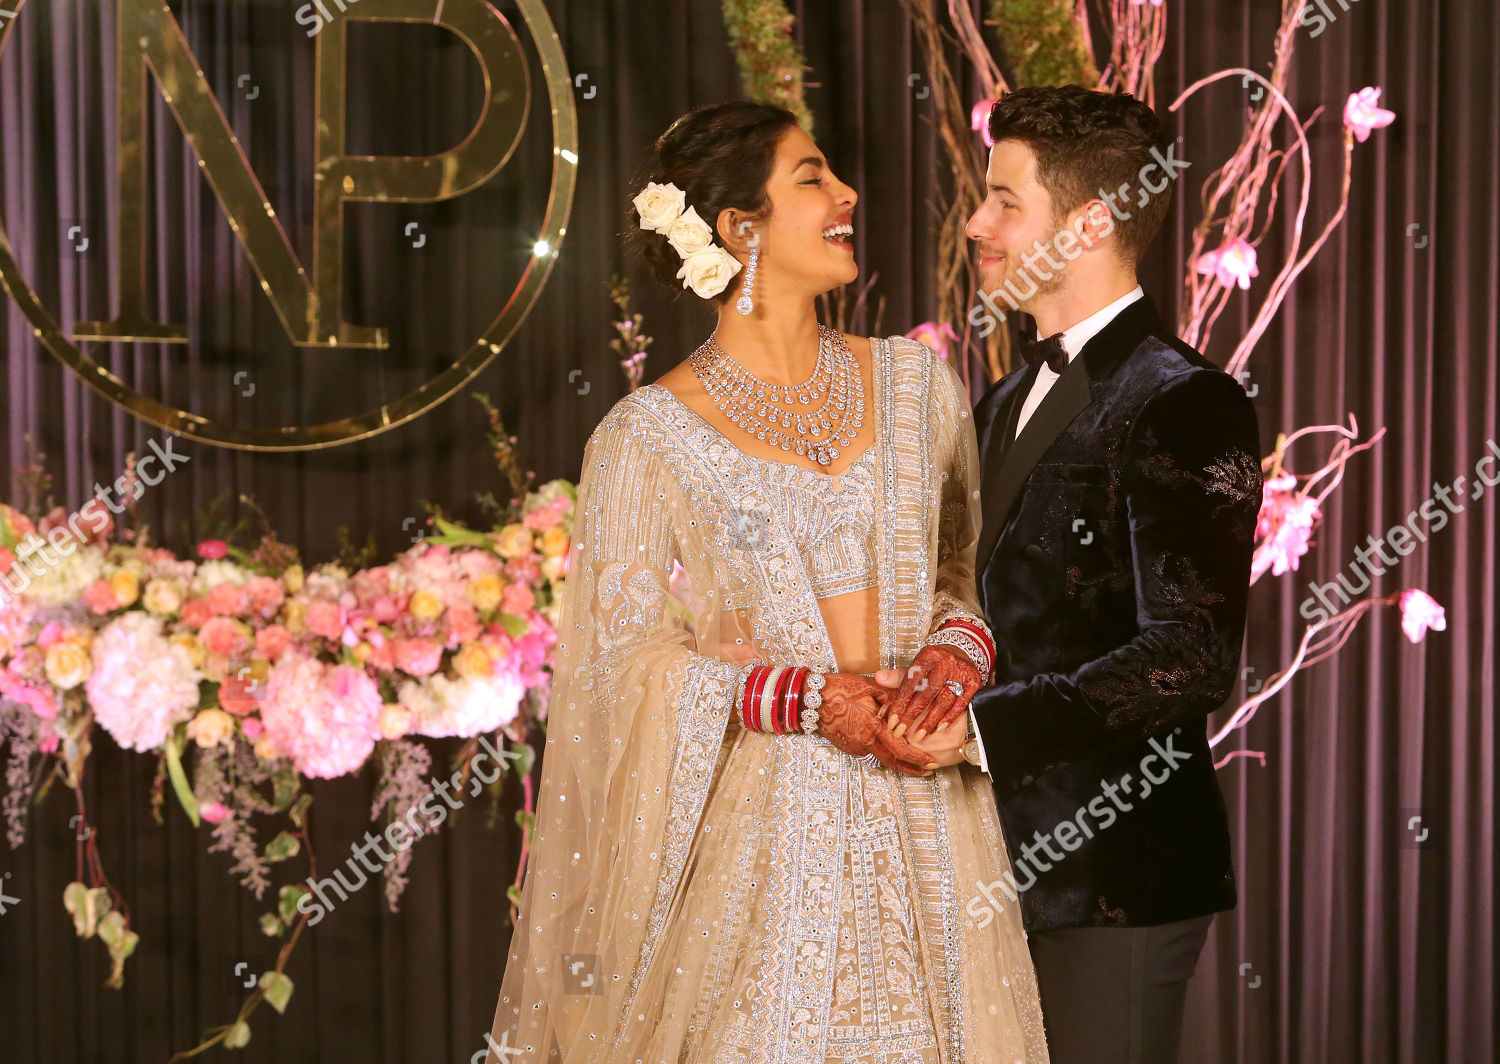 Pin on Priyanka Chopra & Nick Jonas Wedding Photos